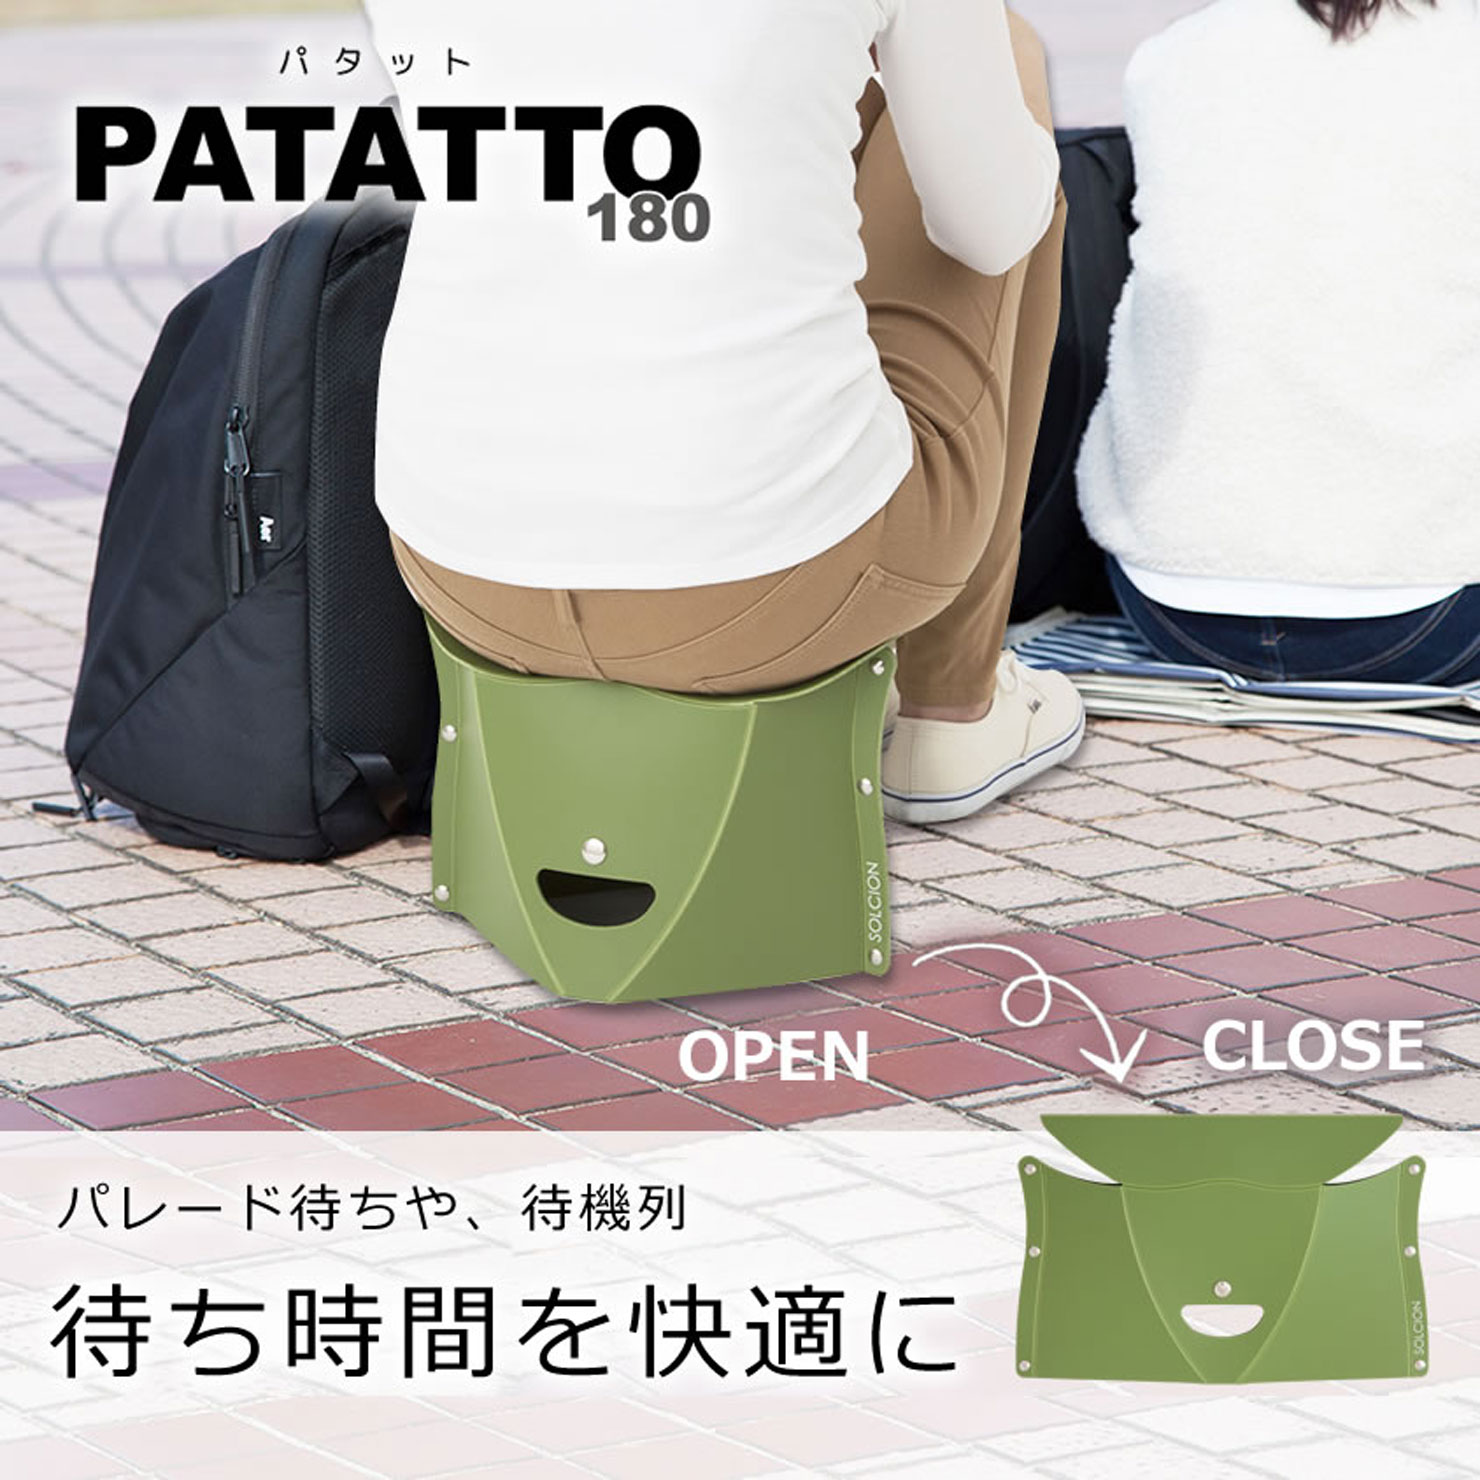 PATATTO180｜商品一覧｜SOLCION 公式ブランドサイト